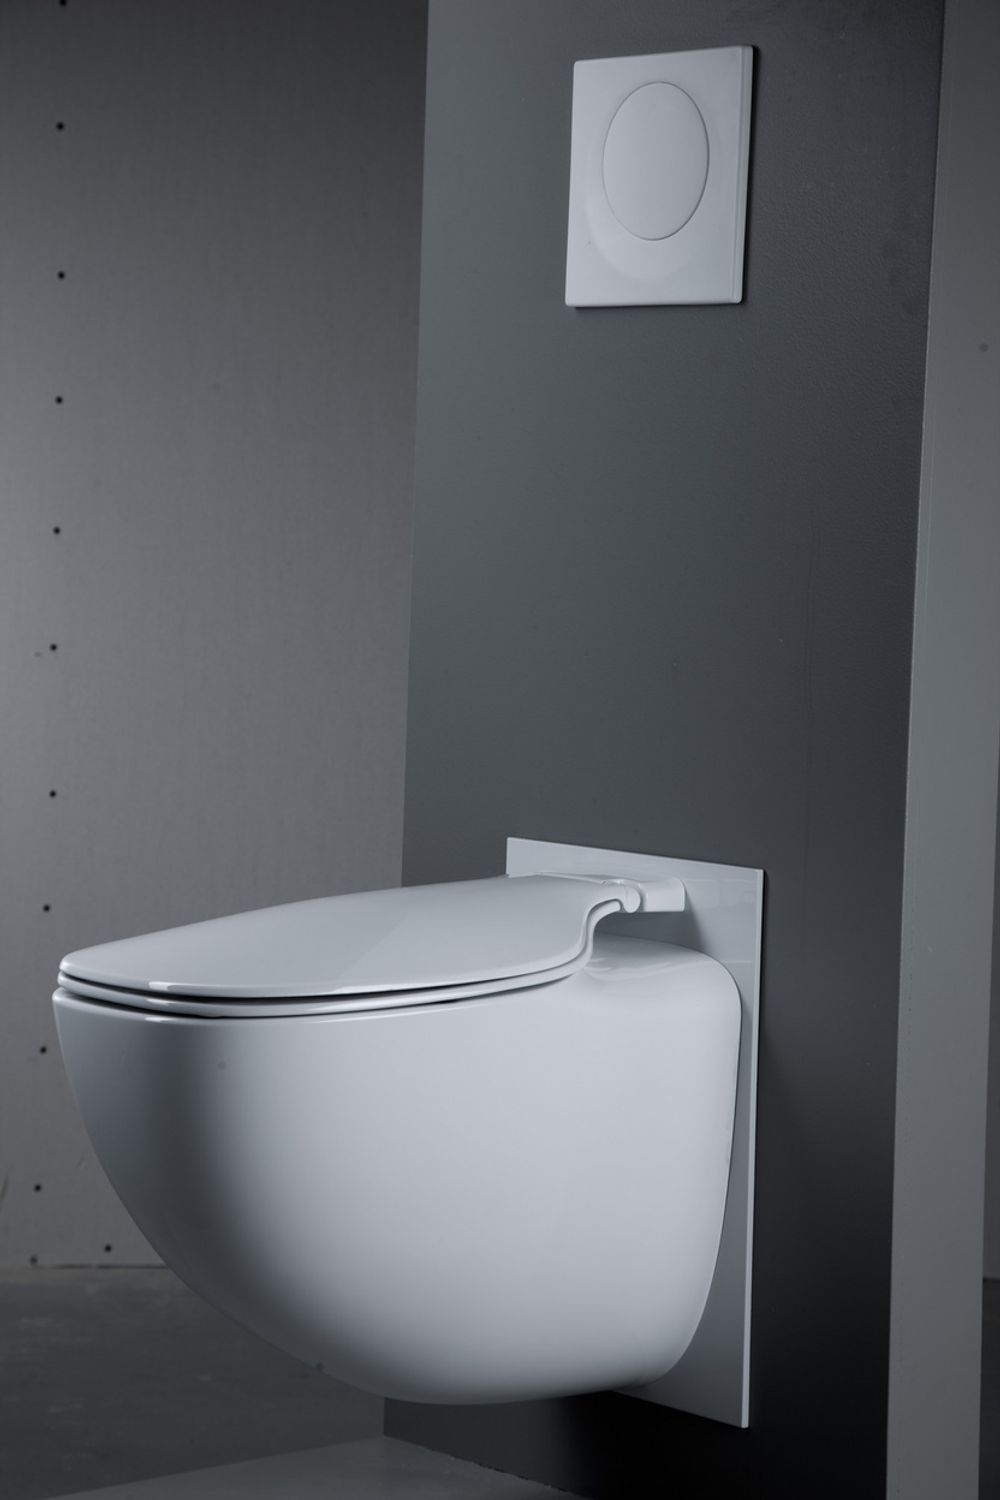 TILTALENDE: Jets har lagt vekt på design, funksjonalitet og å gjøre de nye vakuumdoene like støysvake som vanlige toalett.